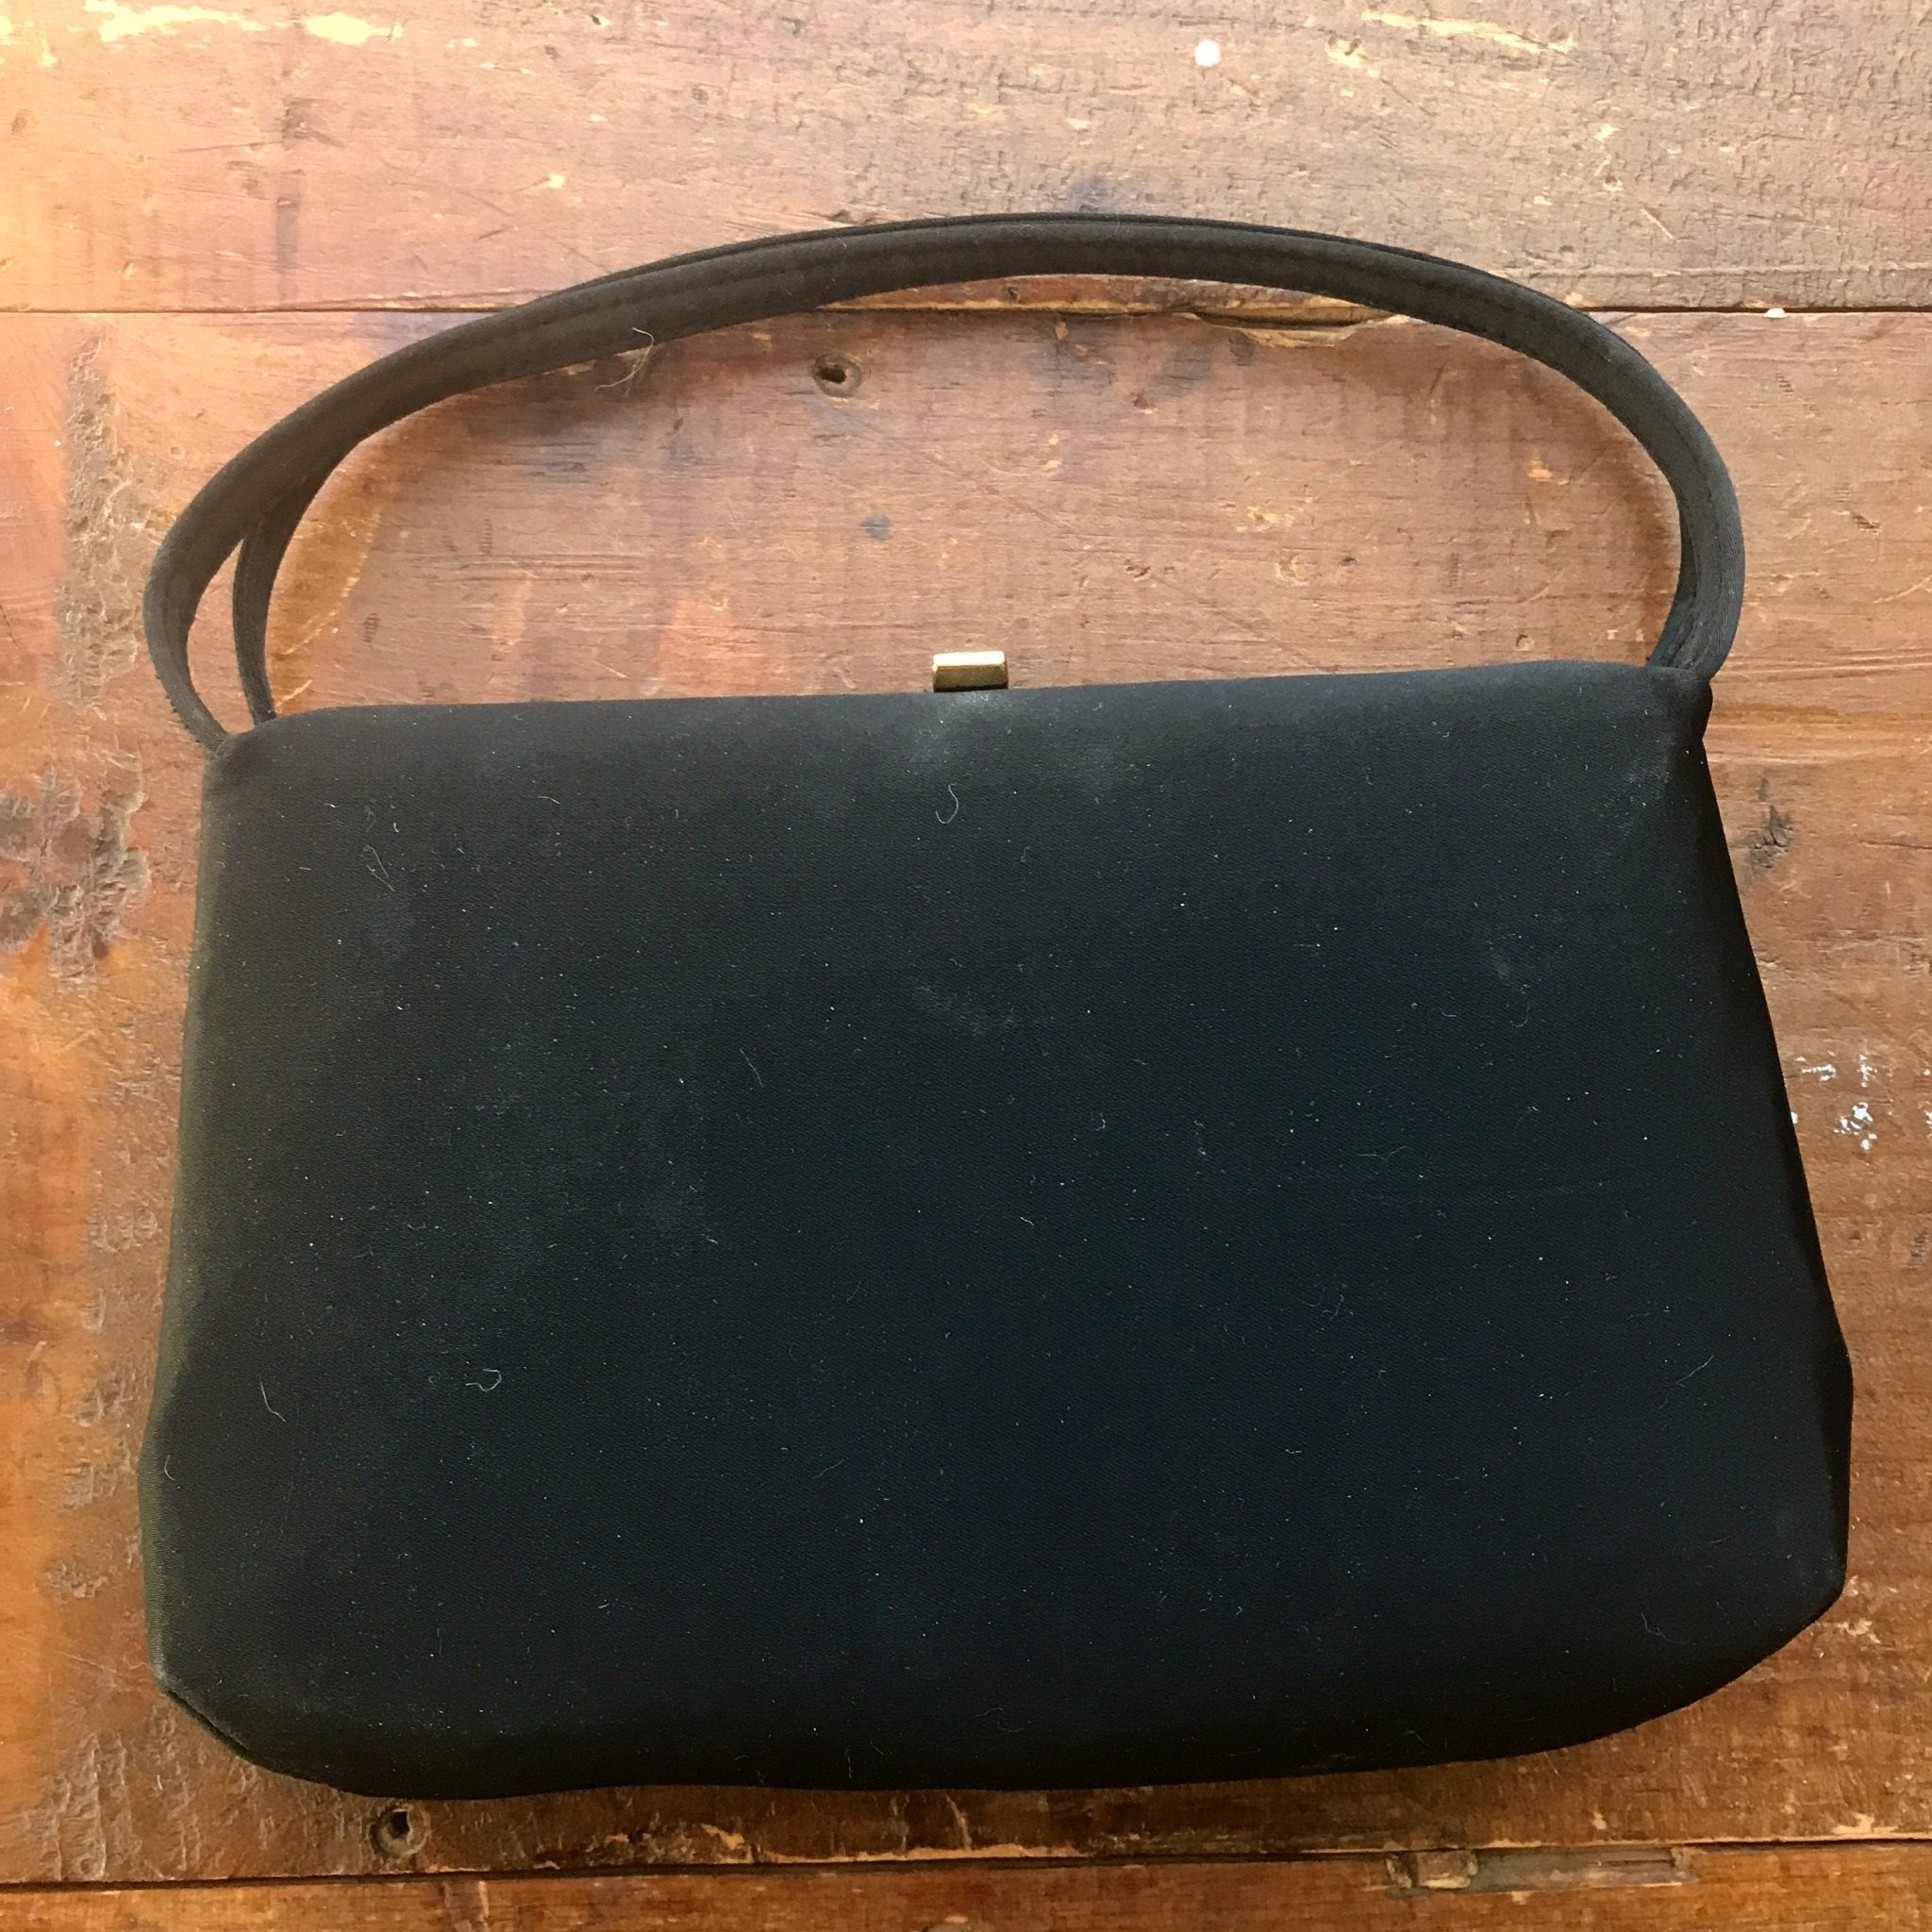 Fashionable Vintage Handbag, Shoulder Bag, Crossbody Bag